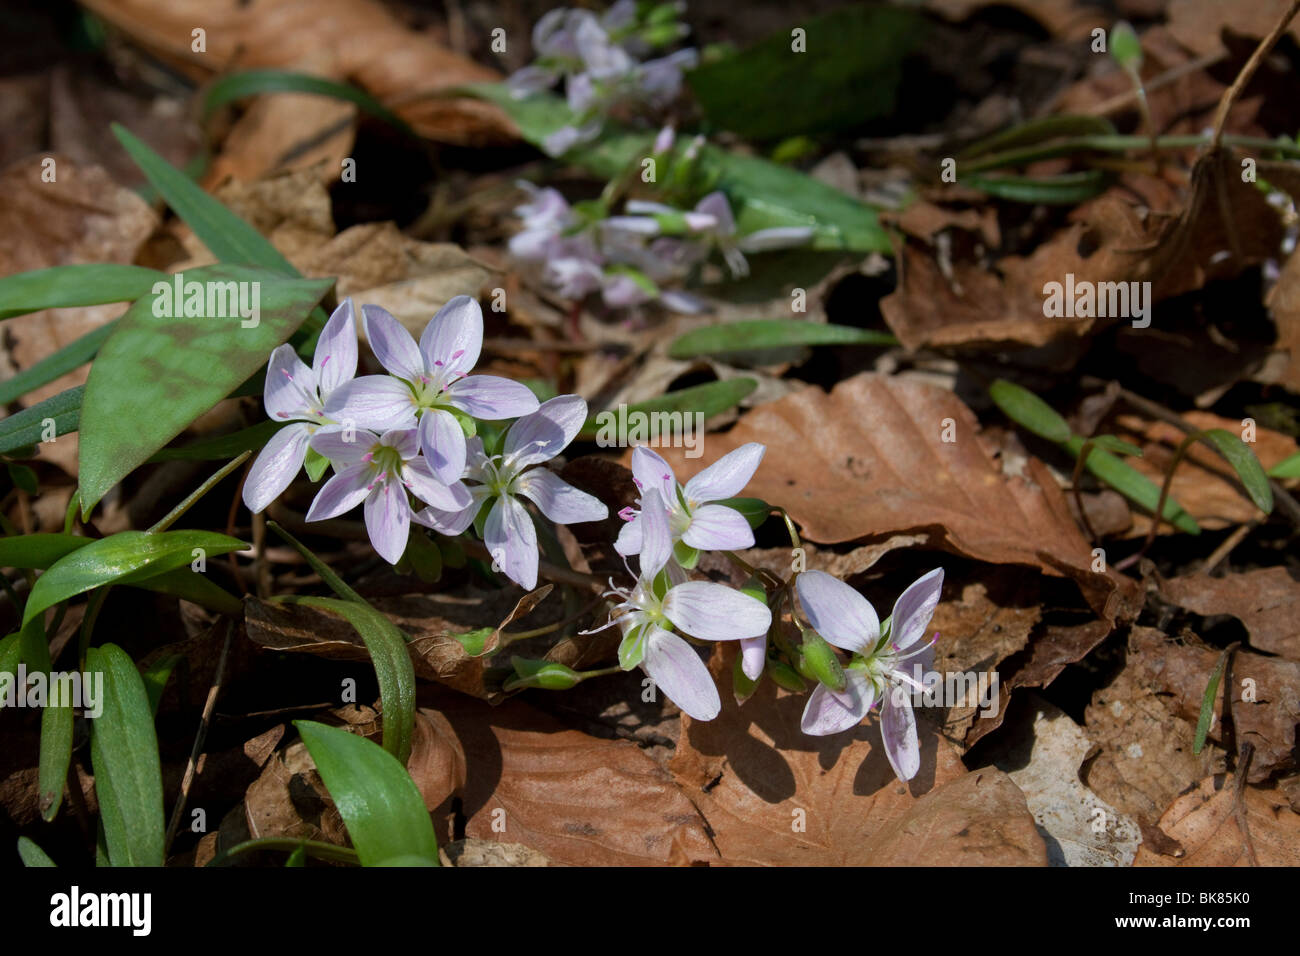 Schmale-leaved Frühling Schönheit (Claytonia virginica) Feder östlichen Vereinigten Staaten durch Dembinsky Foto Assoc Stockfoto